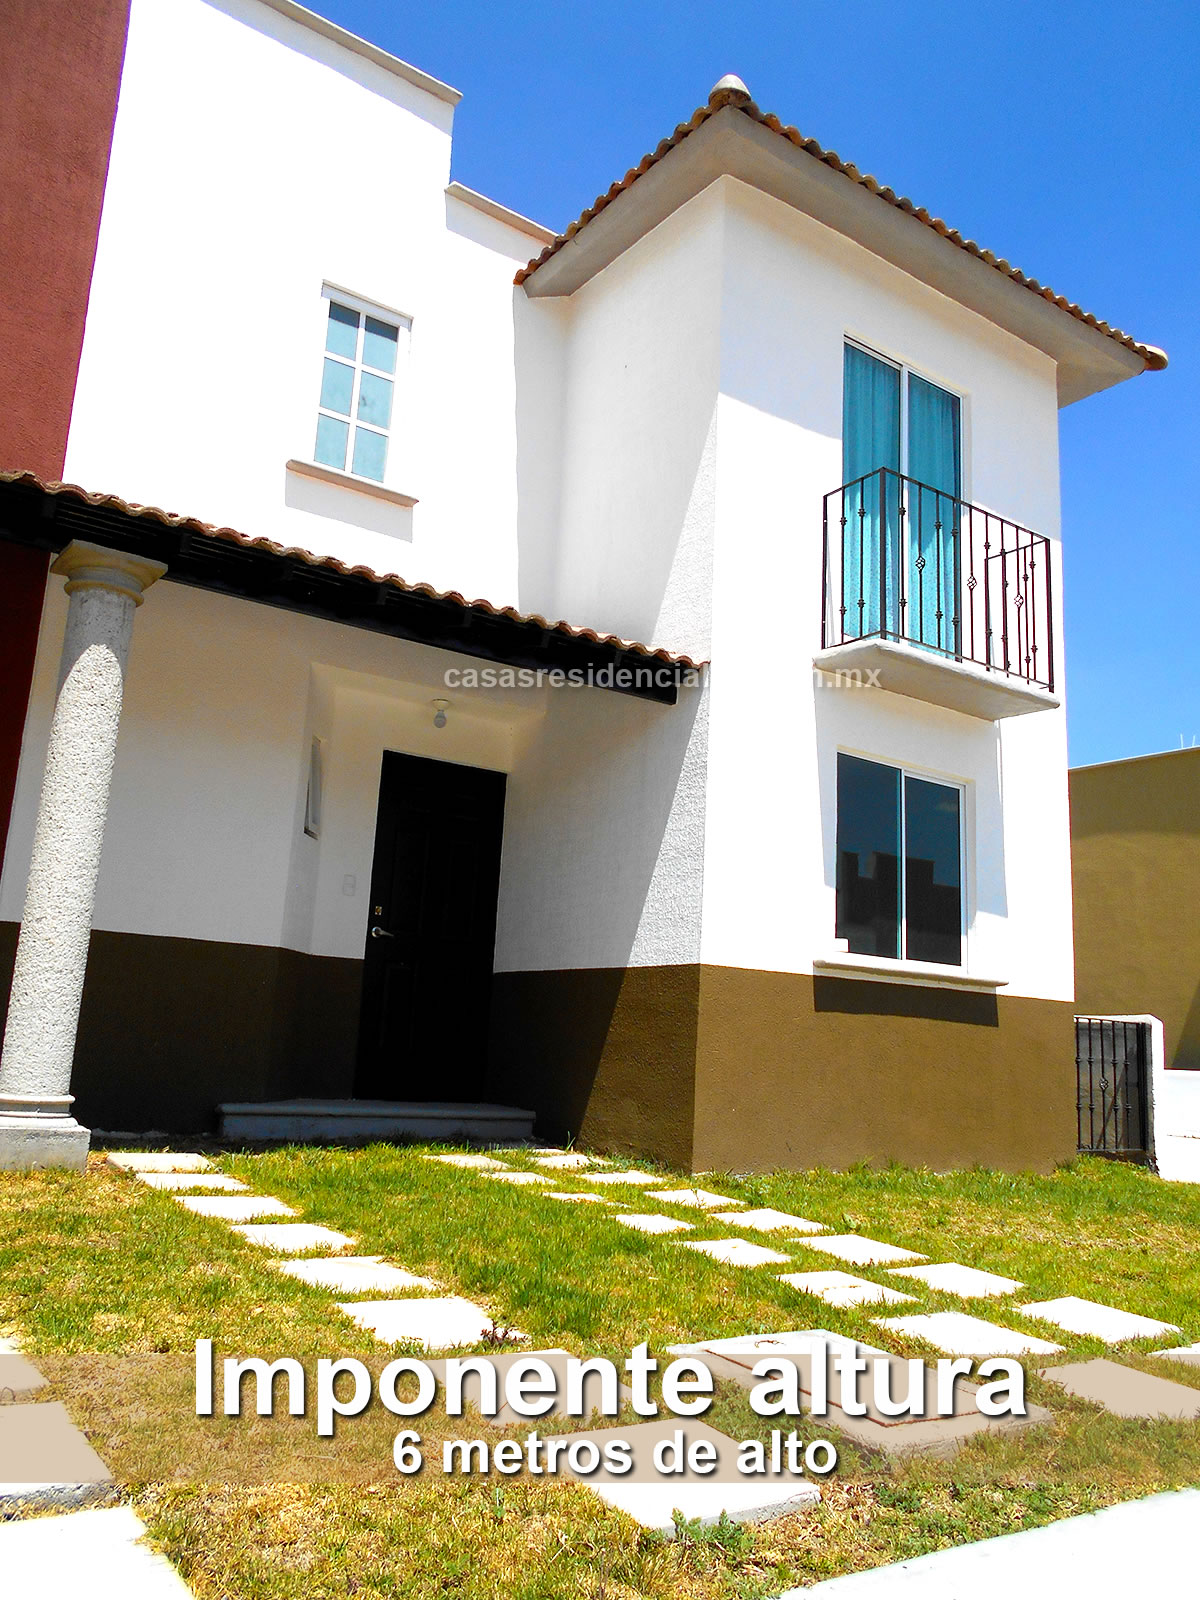 Casas Residenciales en venta cerca del DF con crédito Infonavit desde  $895mil